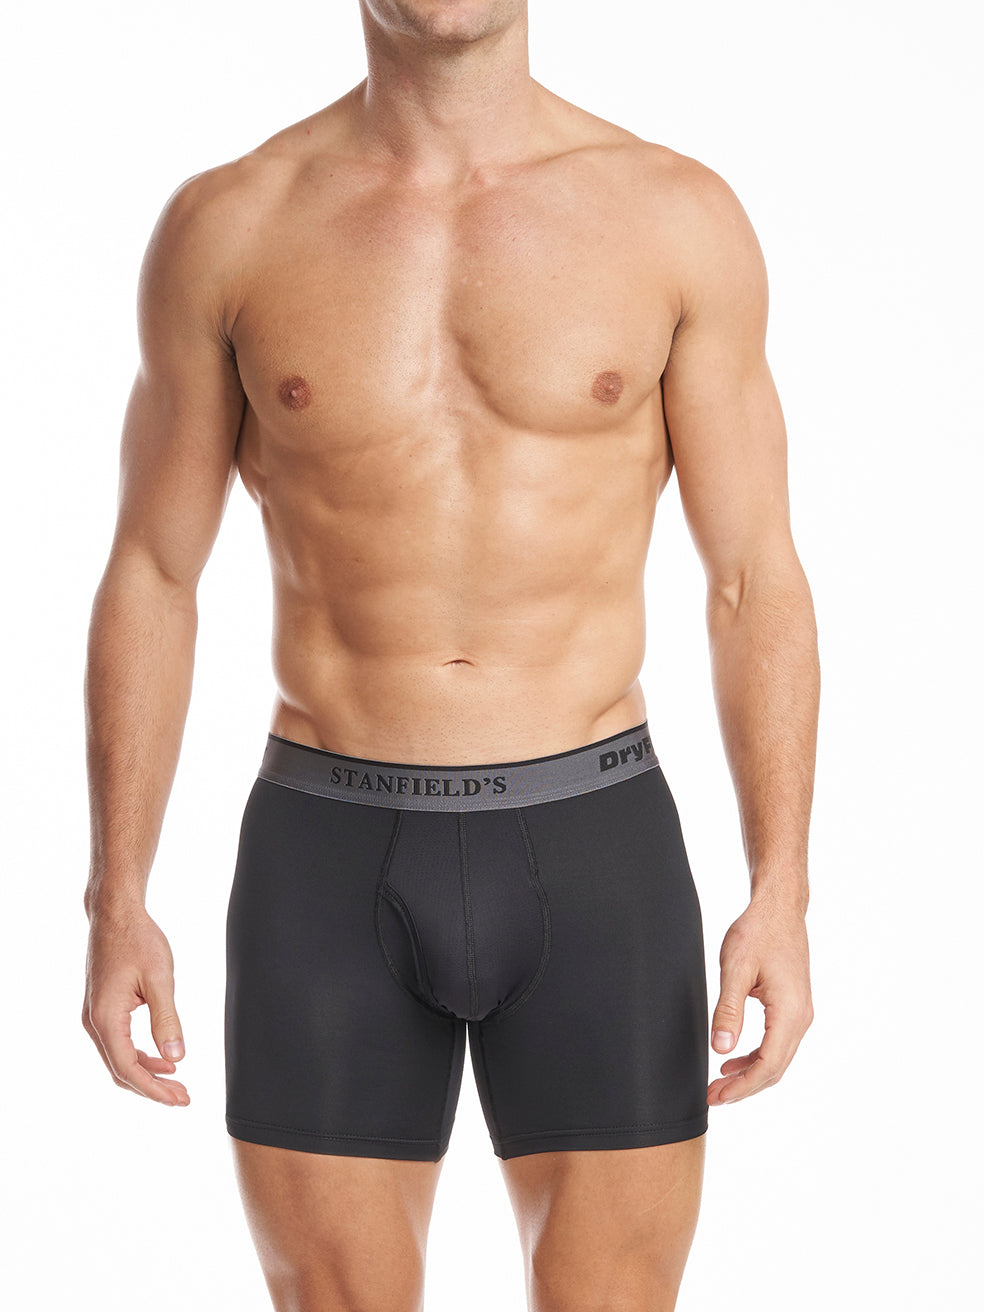 Men’s Boxer Briefs Underwear for Men Bohemian Style European Perspective  Sexy Men's Lace Men's Briefs